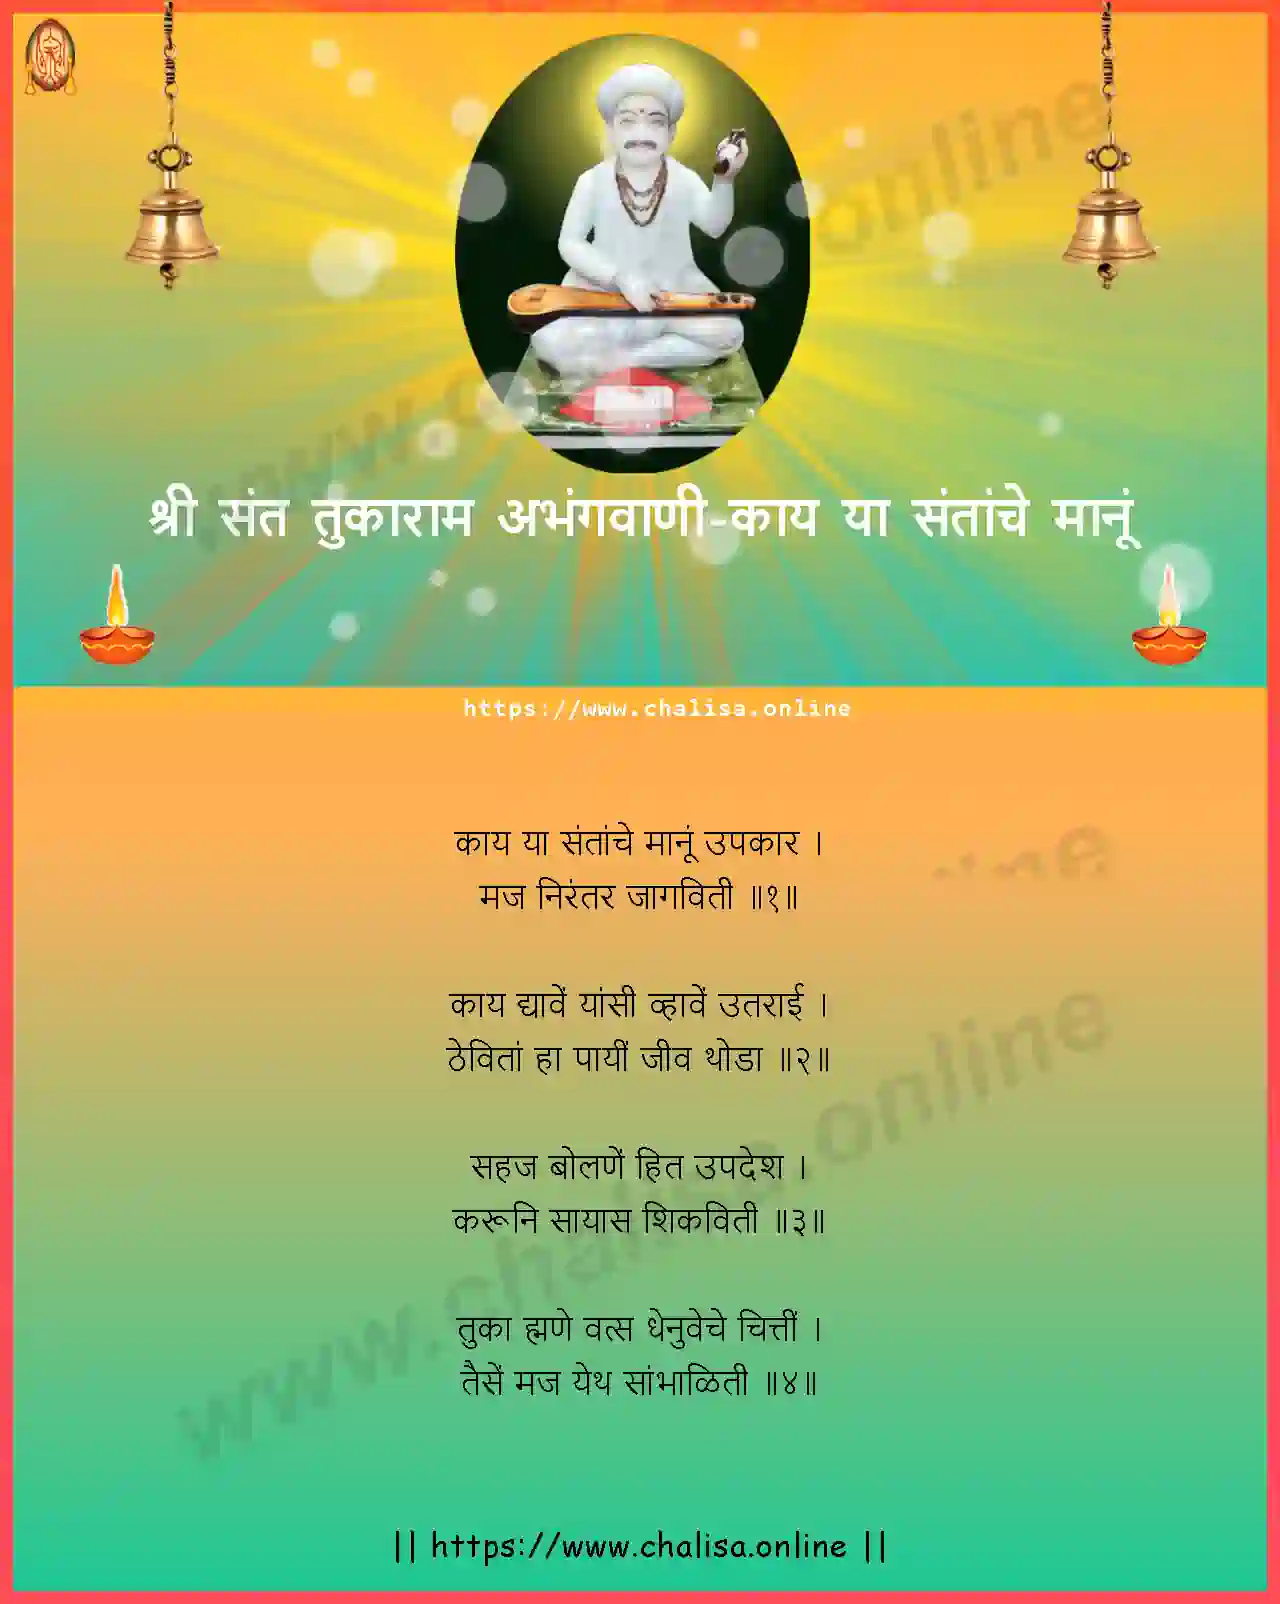 kaay-ya-santanche-shri-sant-tukaram-abhang-marathi-lyrics-download